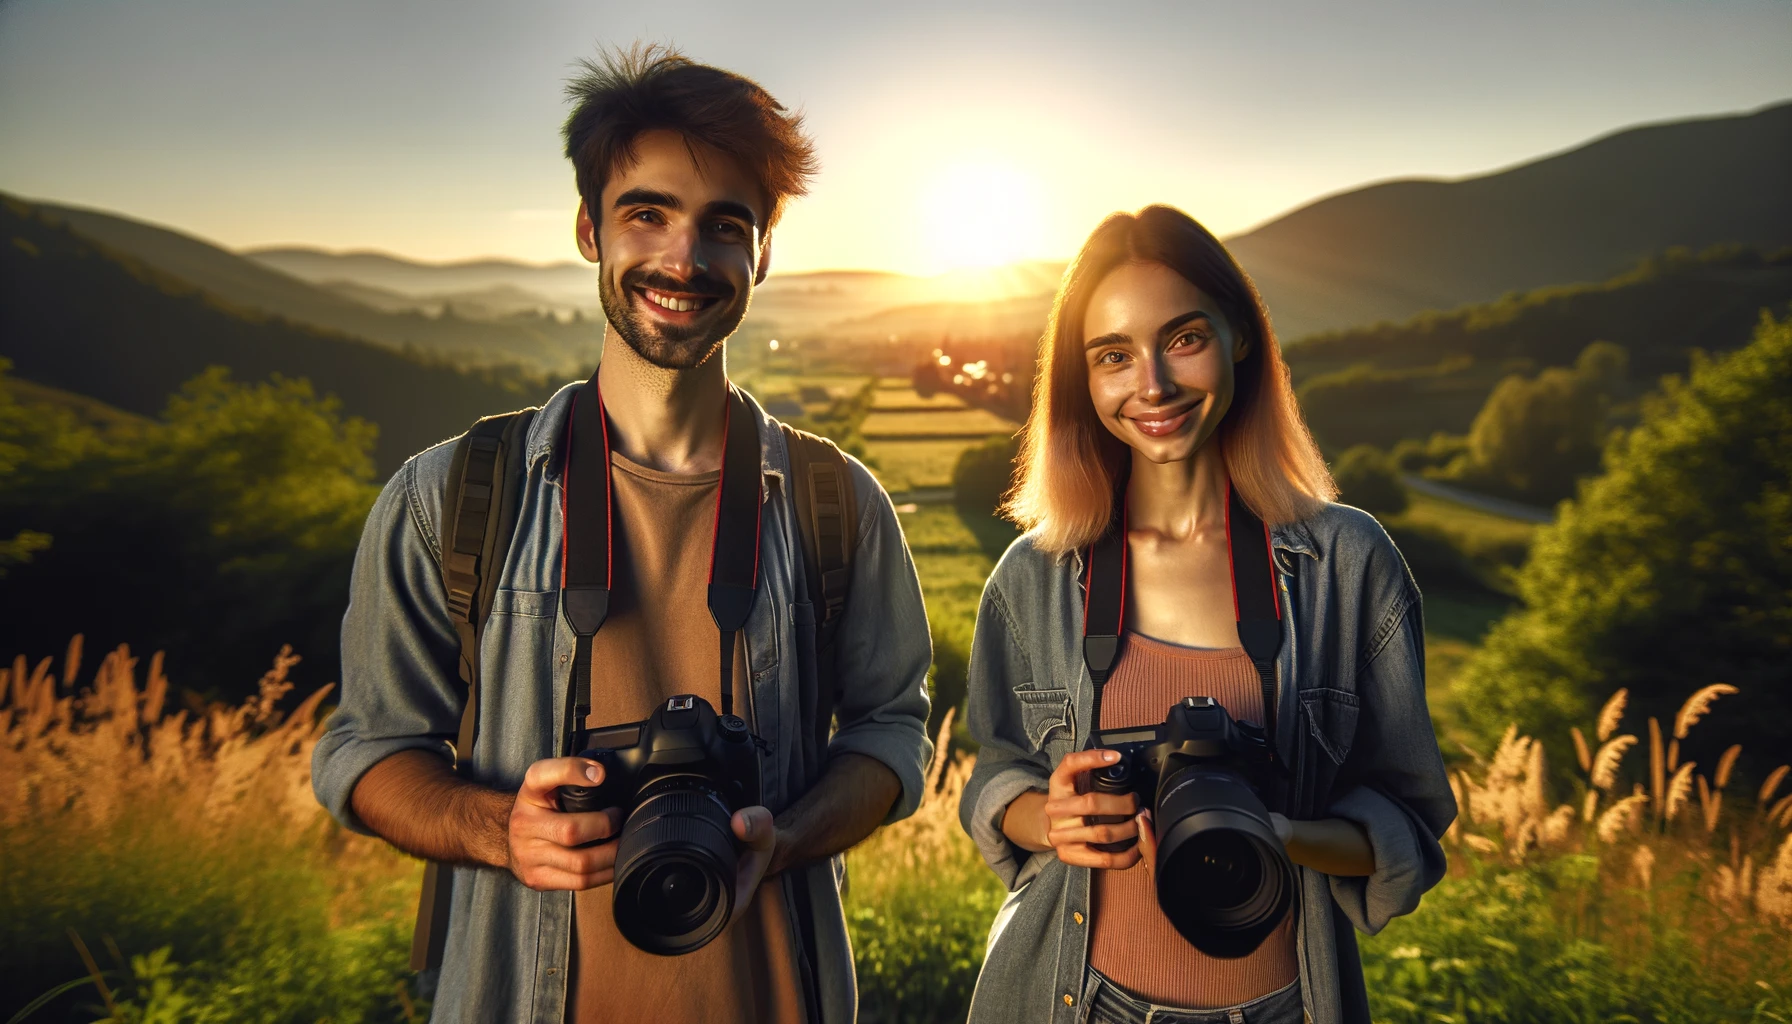 Photographes débutants de type caucasien et guadeloupéen, tenant des appareils photo DSLR, debout dans un paysage pittoresque lors de l'heure dorée, avec un ciel clair, des rayons de soleil chaleureux, une végétation luxuriante et une chaîne de montagnes en arrière-plan.